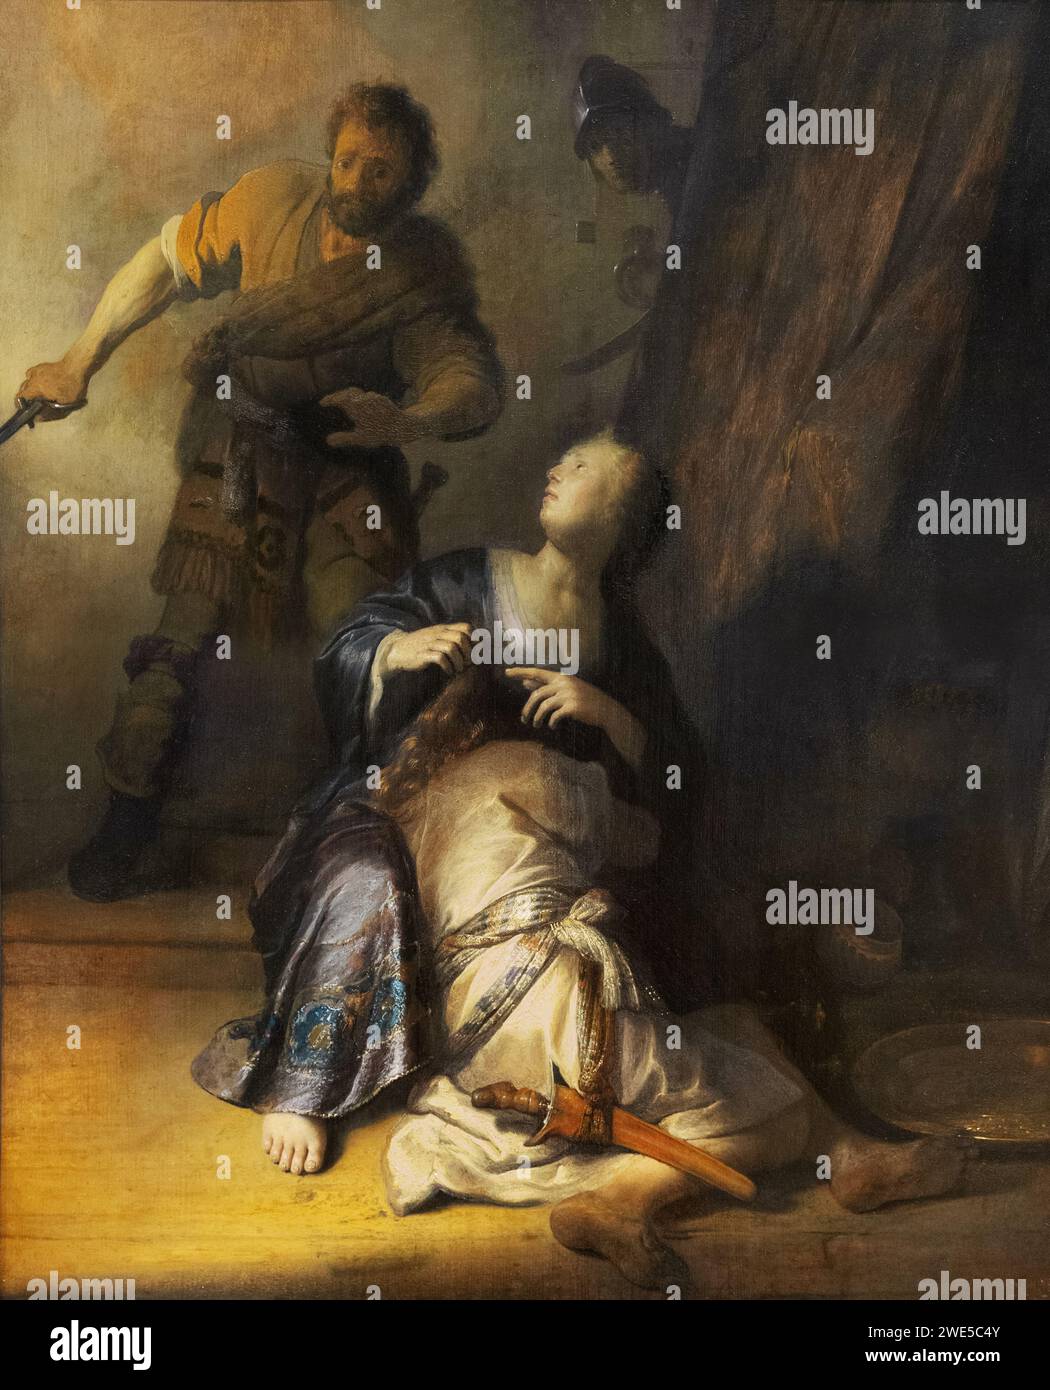 Rembrandt van Rijn, ou peinture de Rembrandt ; 'Samson et Delilah' 1628 ; peinture néerlandaise de l'âge d'or d'une histoire biblique. xviie siècle Banque D'Images